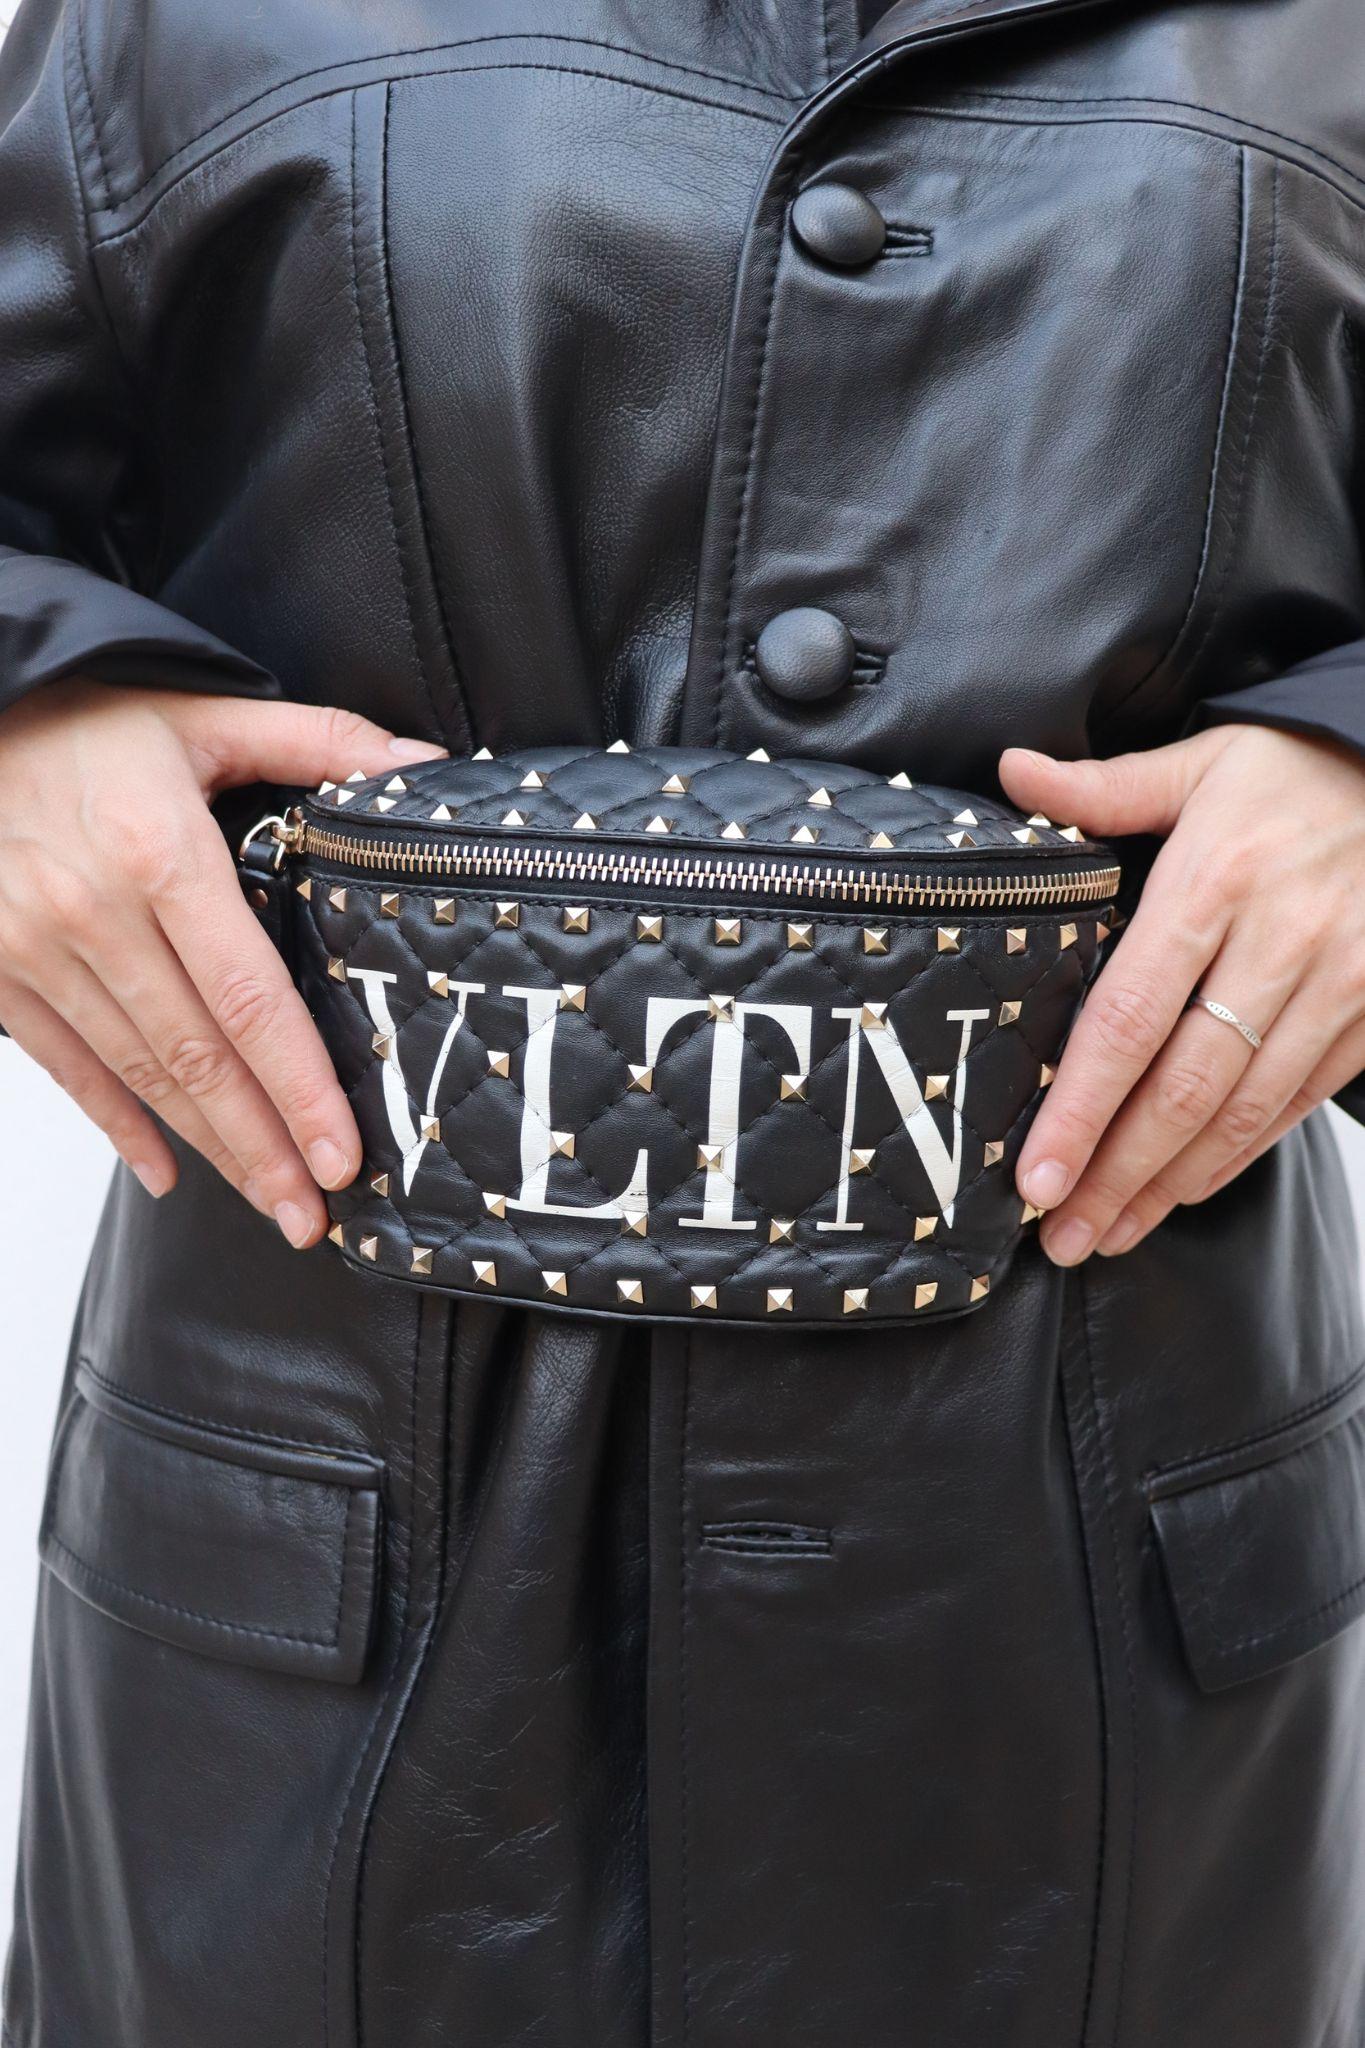 Valentino Black Leather VLTN Rockstud Bum Bag, comporte des embellissements Rockstud, une fermeture éclair sur le devant et un intérieur doublé de cuir.

MATERIAL : Cuir.
Quincaillerie : Or.
Hauteur : 11cm
Largeur : 20cm / Dessus
Profondeur :